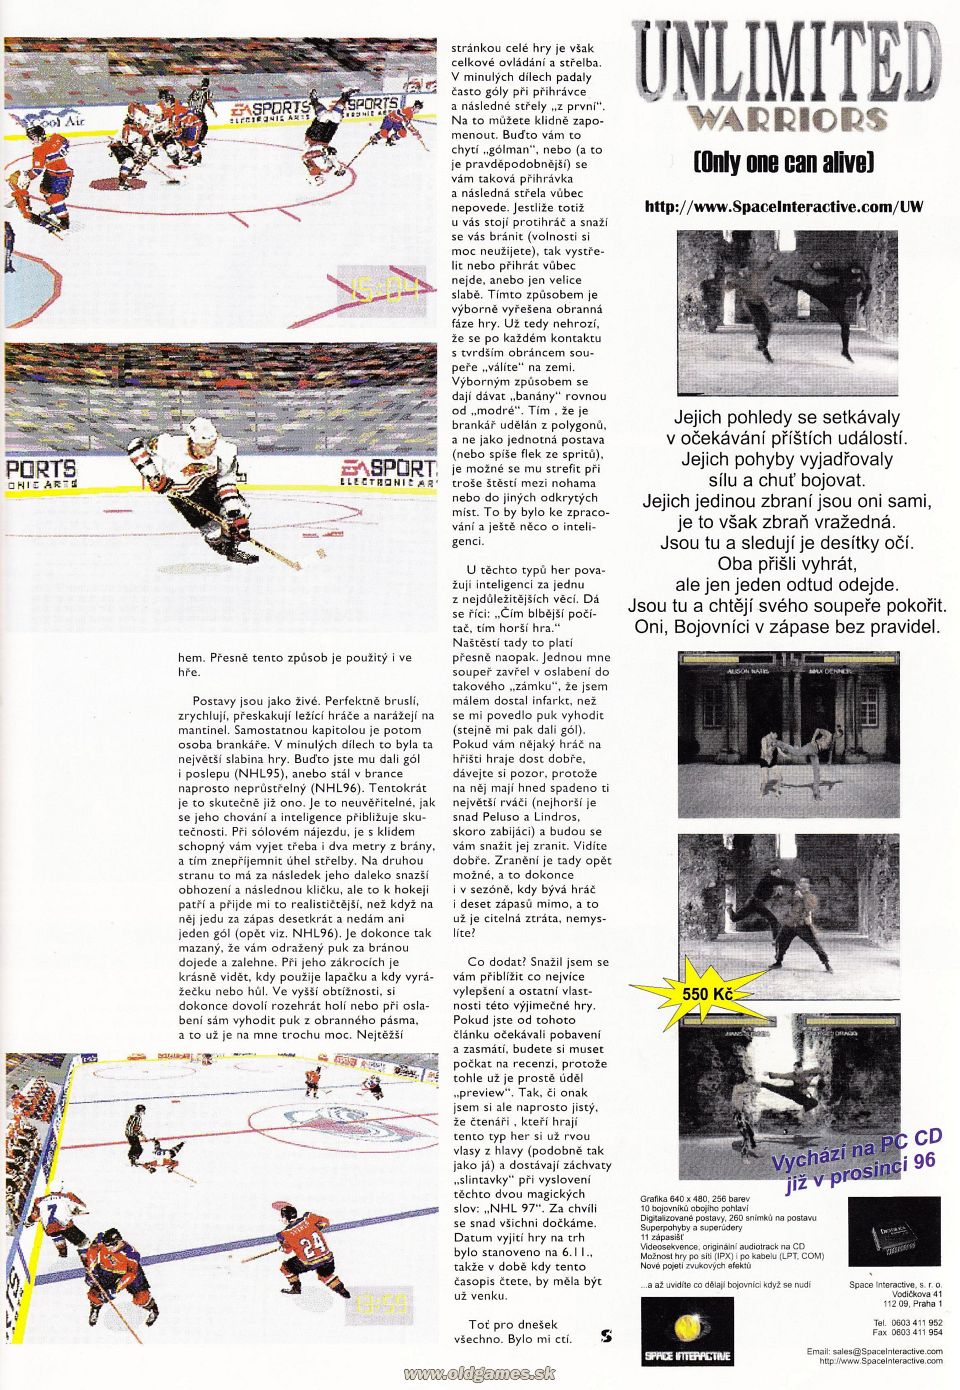 Preview: NHL Hockey 97